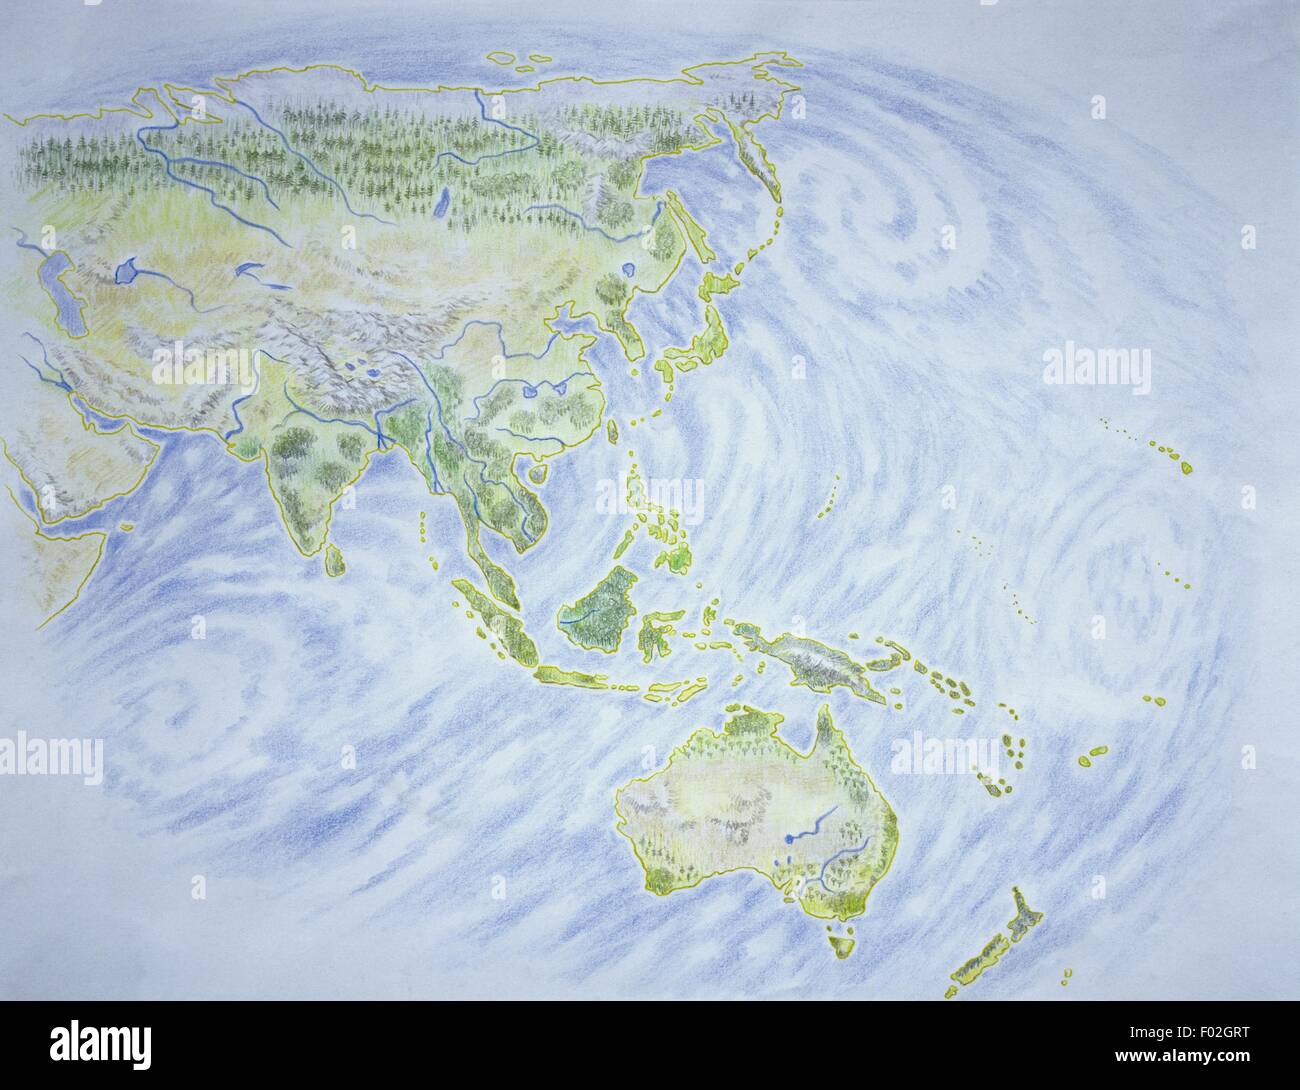 Cartographie - Carte de l'Asie et l'Océanie, illustration Banque D'Images